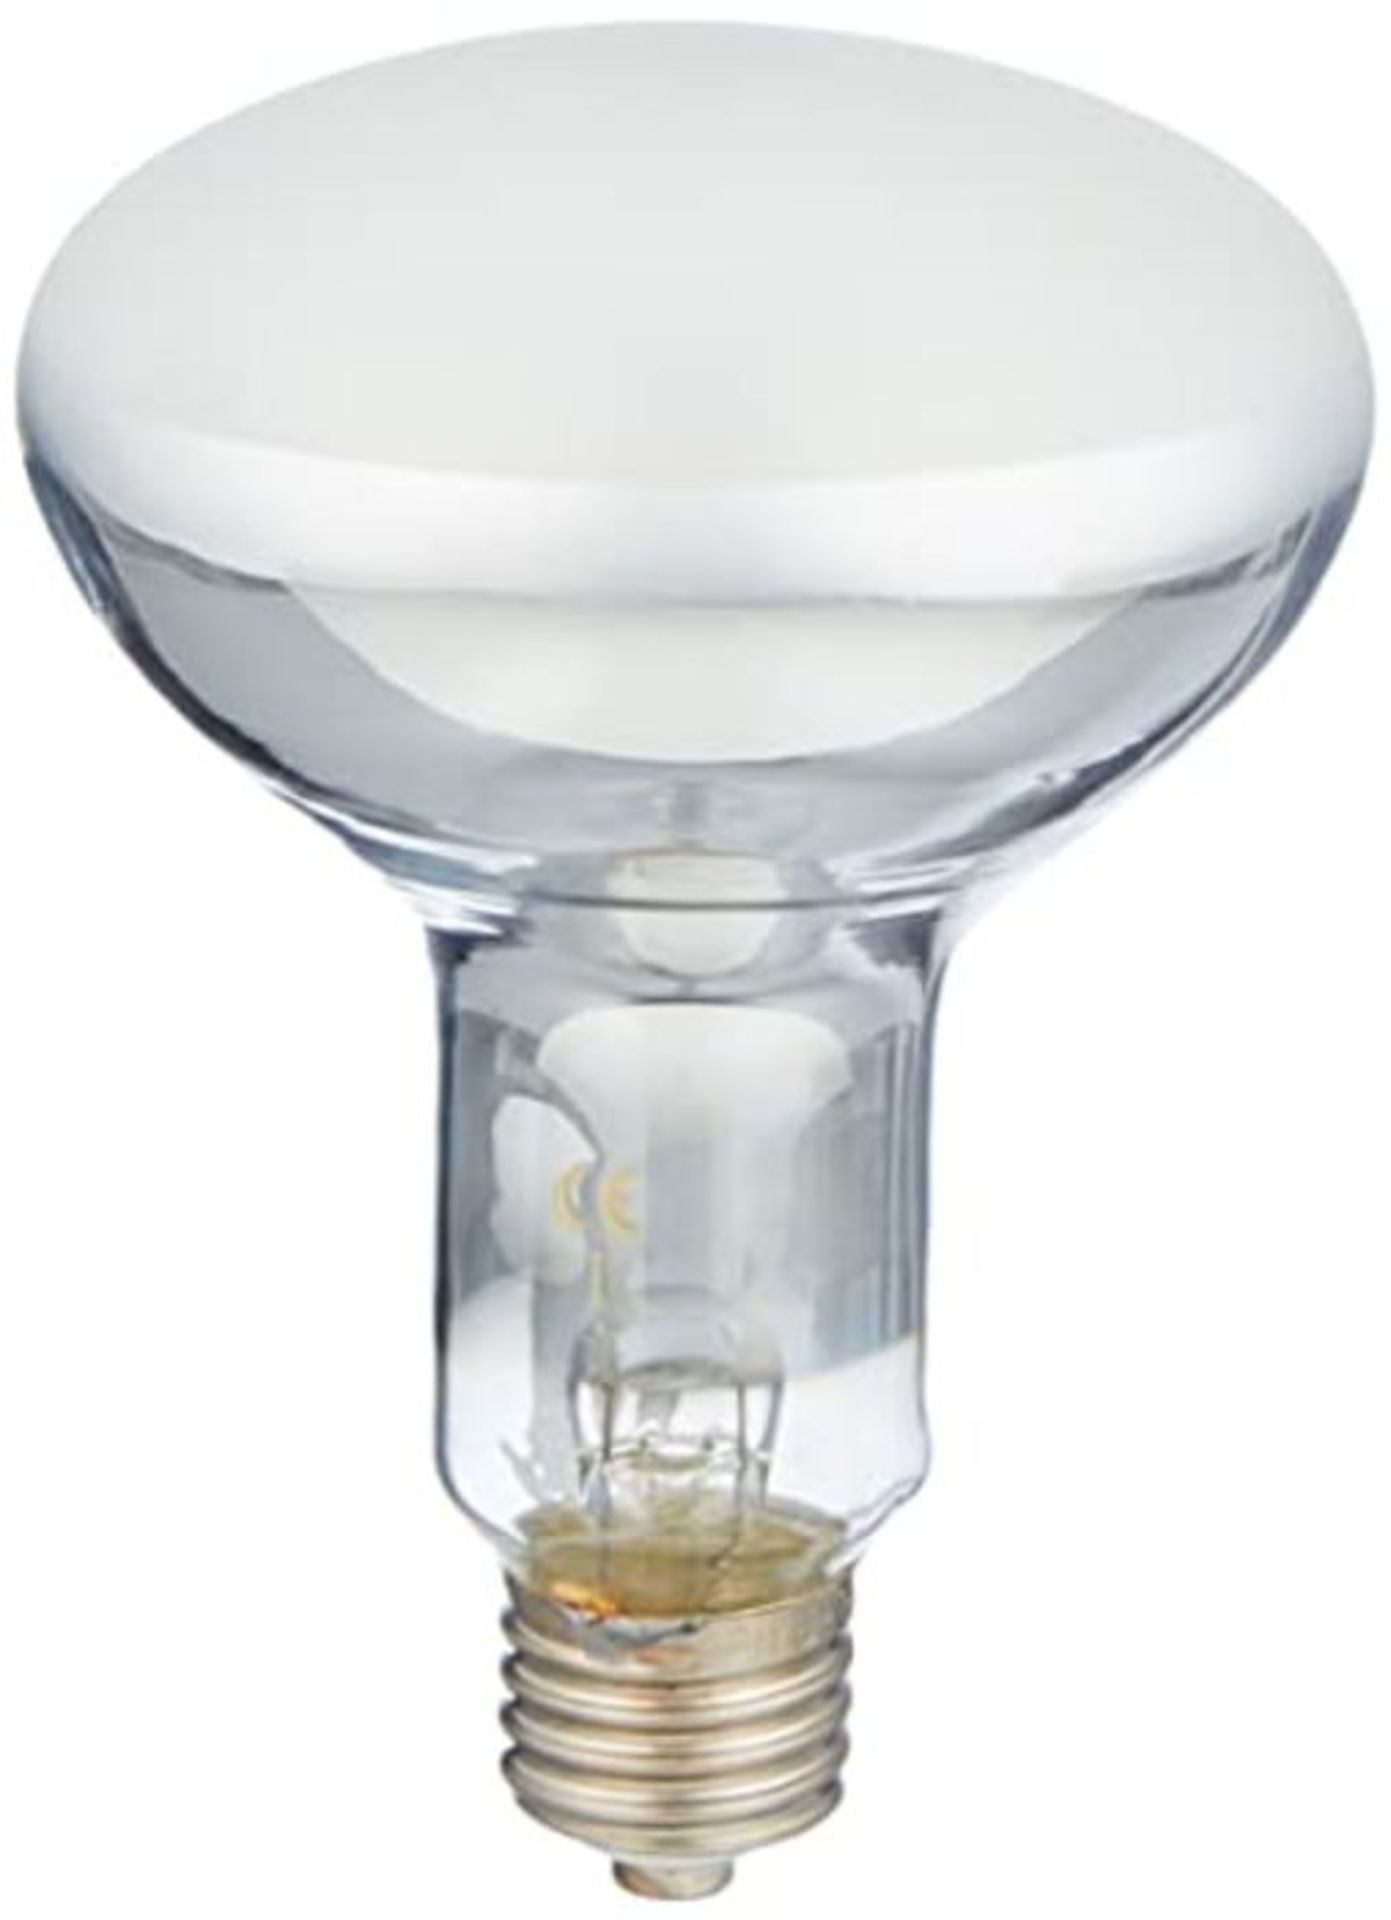 Trixie ProSun Mixed D3 Self Ballasted UV B Lamp, 100 Watt, 125 ? 285 mm